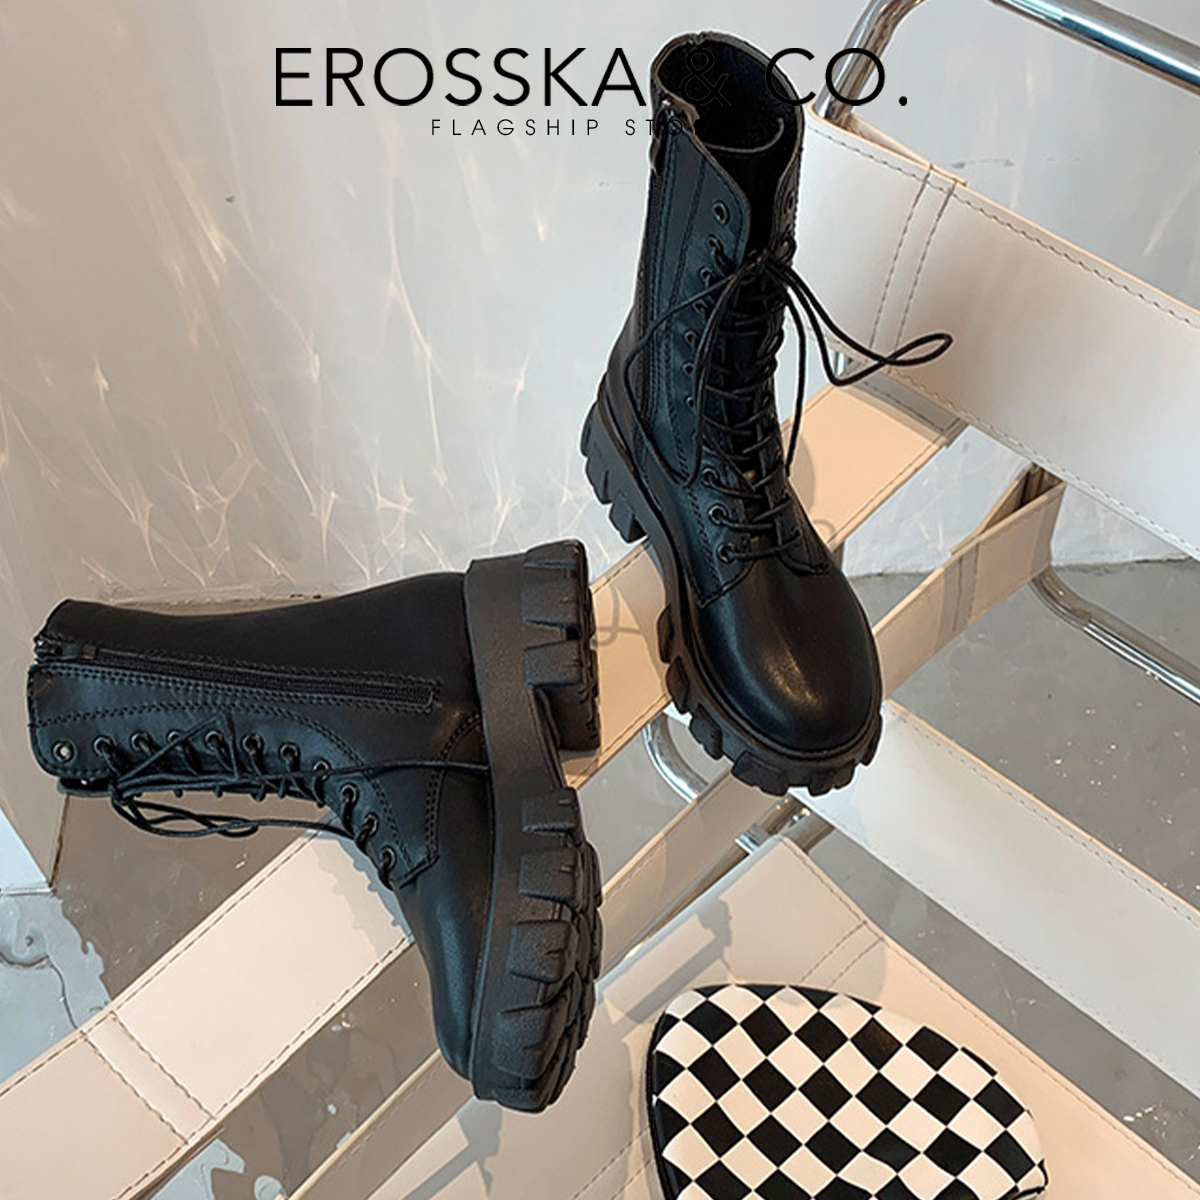 Erosska - Giày boot cổ cao có khoá kéo phong cách cá tính năng động - GB008